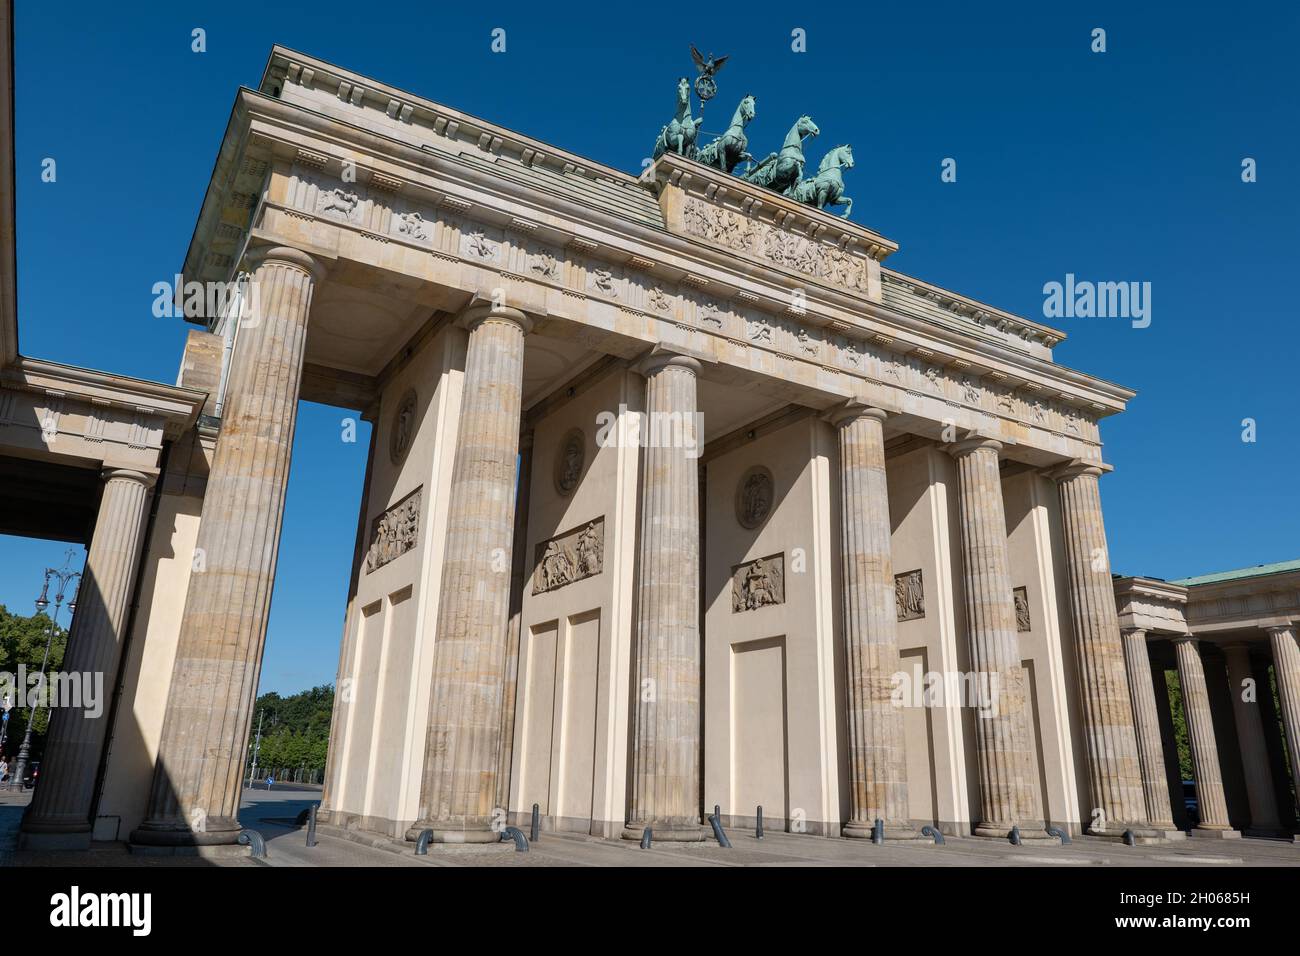 La porta di Brandeburgo, monumento storico della città di Berlino, in Germania, architettura in stile neoclassico. Foto Stock